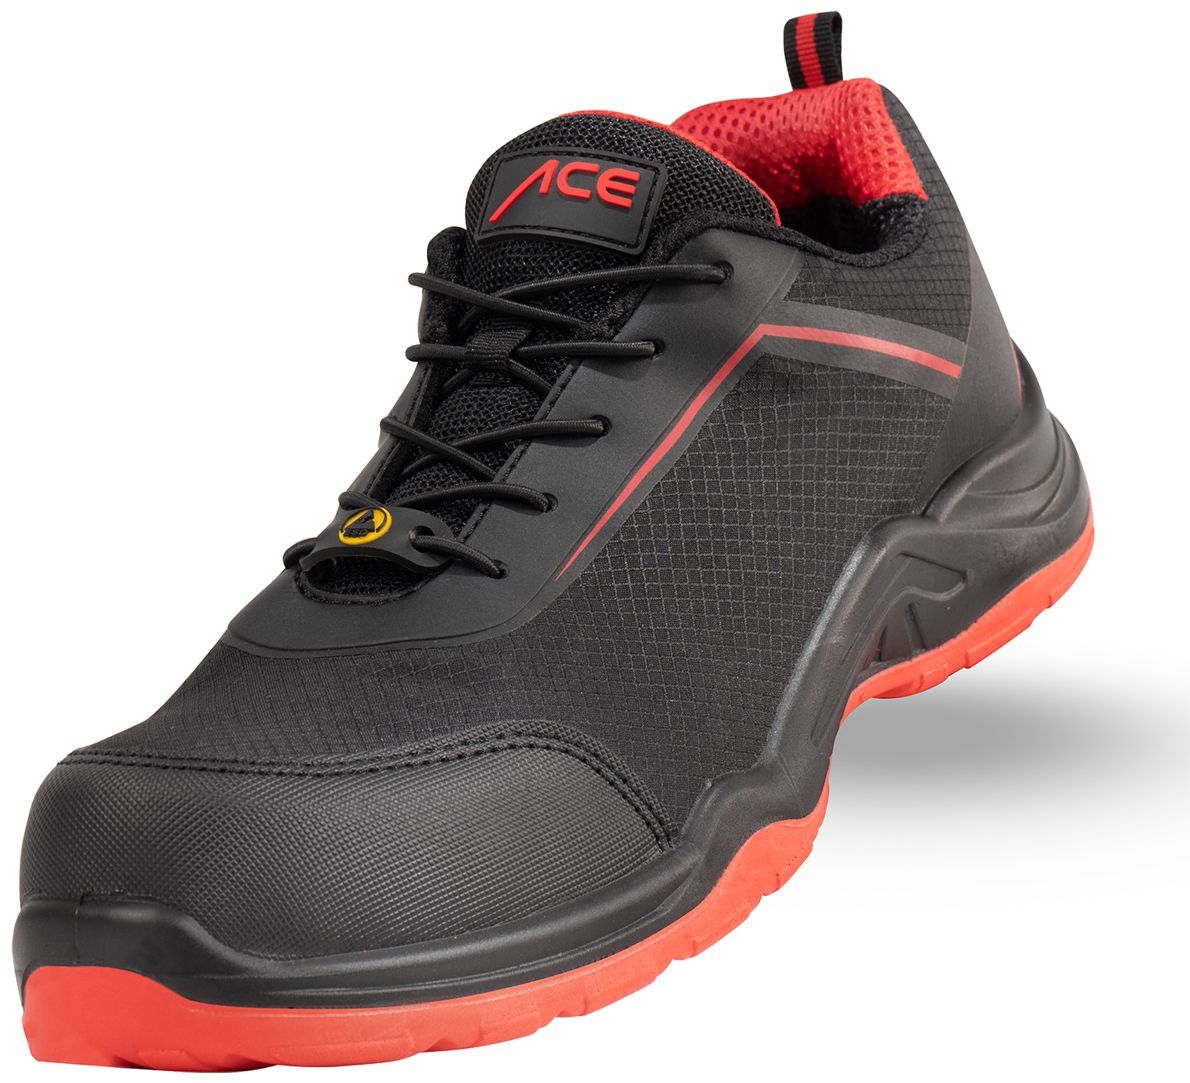 ACE Sapphire S1-P-Arbeits-Sneakers - mit Kunststoffkappe - Sicherheits-Schuhe für die Arbeit  - Schwarz/Rot - 41